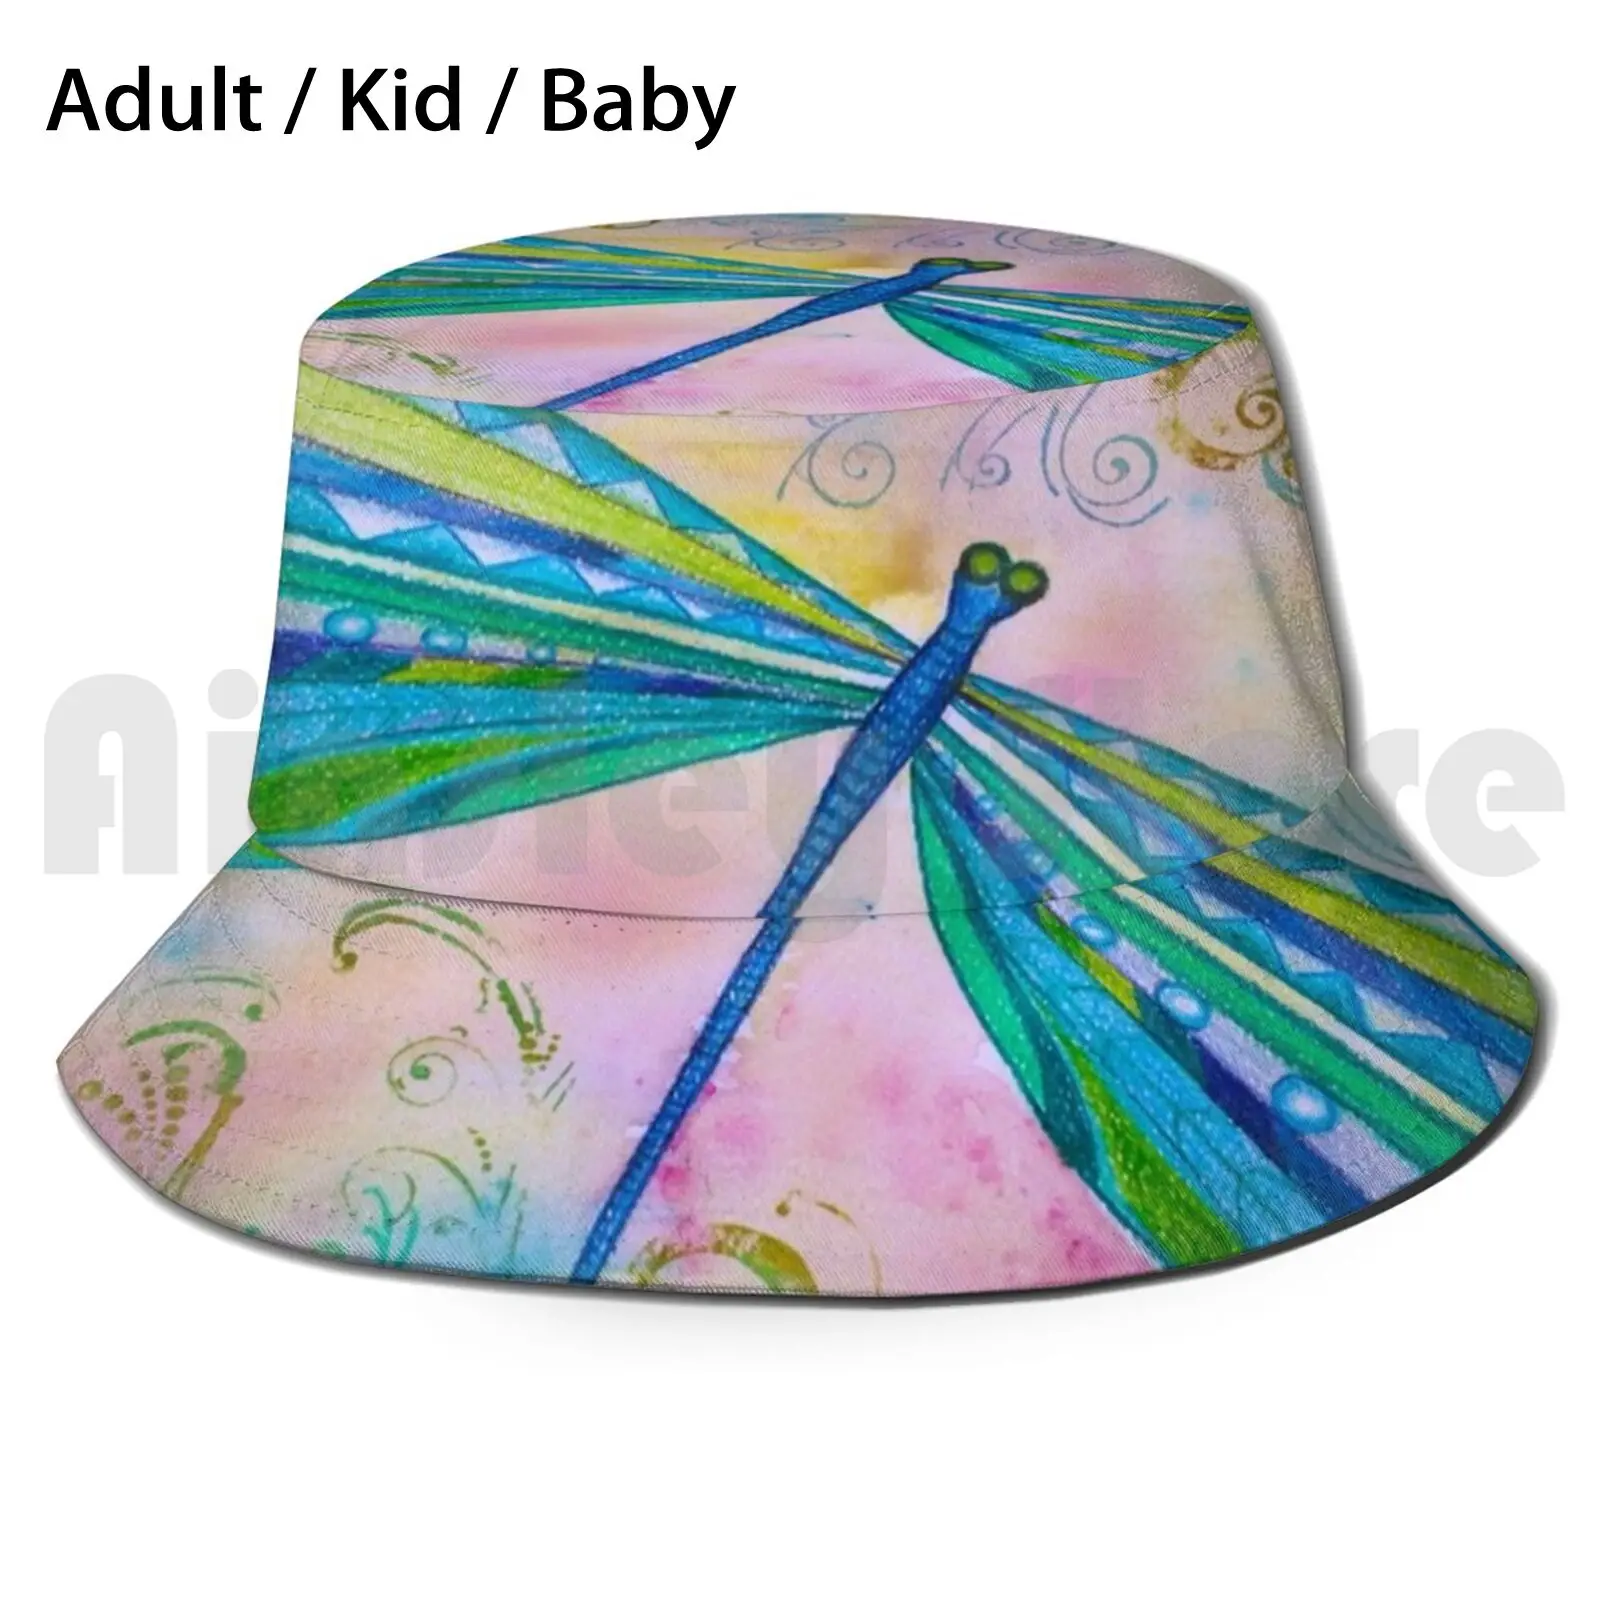 

Солнцезащитная шляпа со стрекозой Ii, складная, с УФ-защитой, с насекомыми, натуральными растениями, цветами, зеленая, фиолетовая, сиреневая